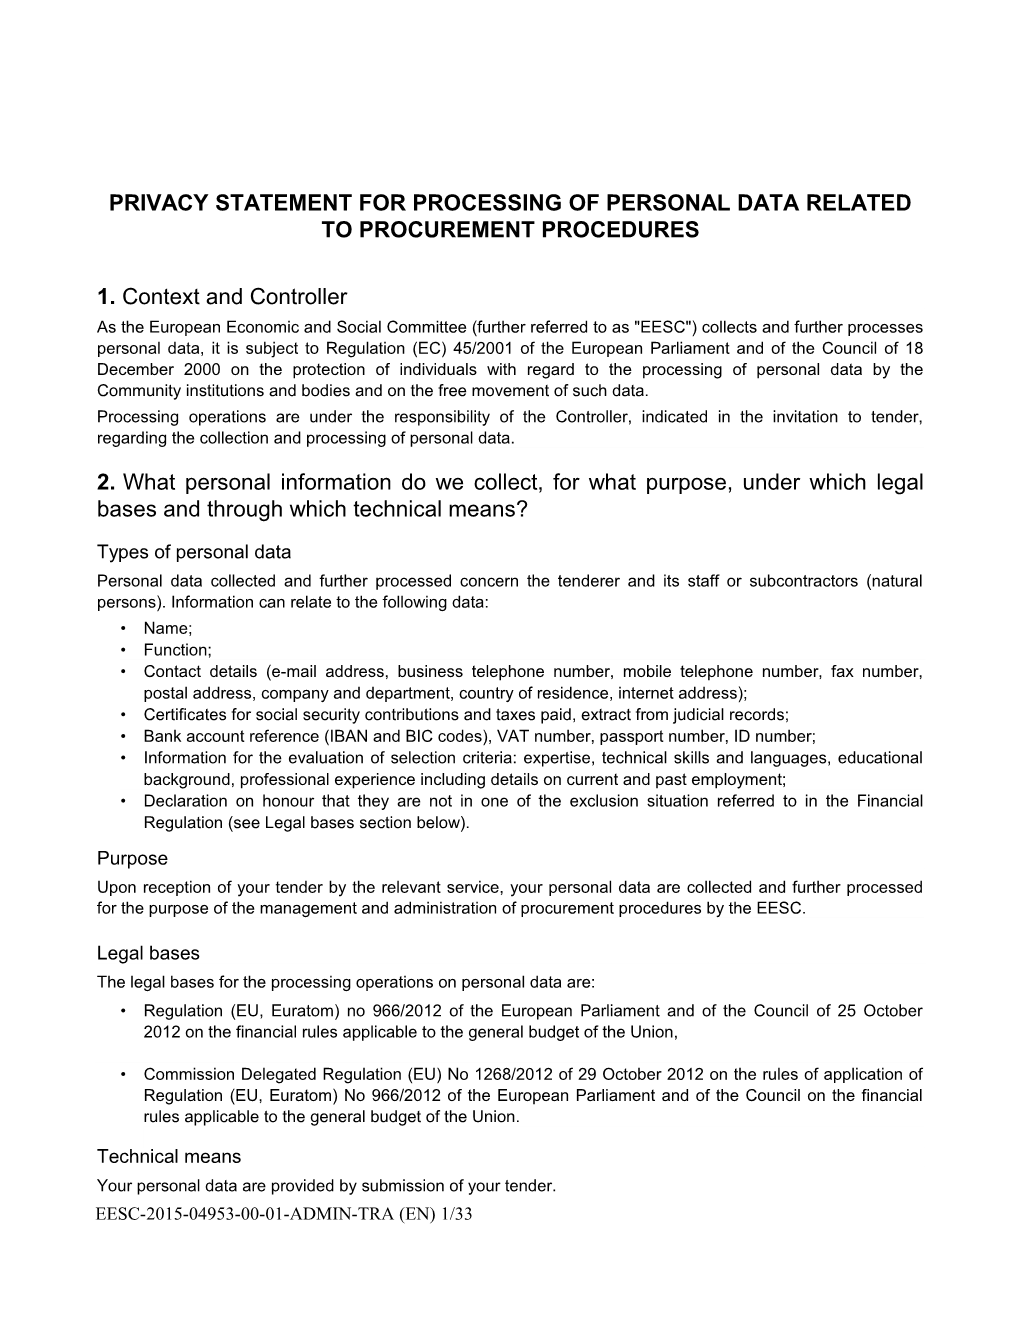 Privacy Statement - Public Procurement